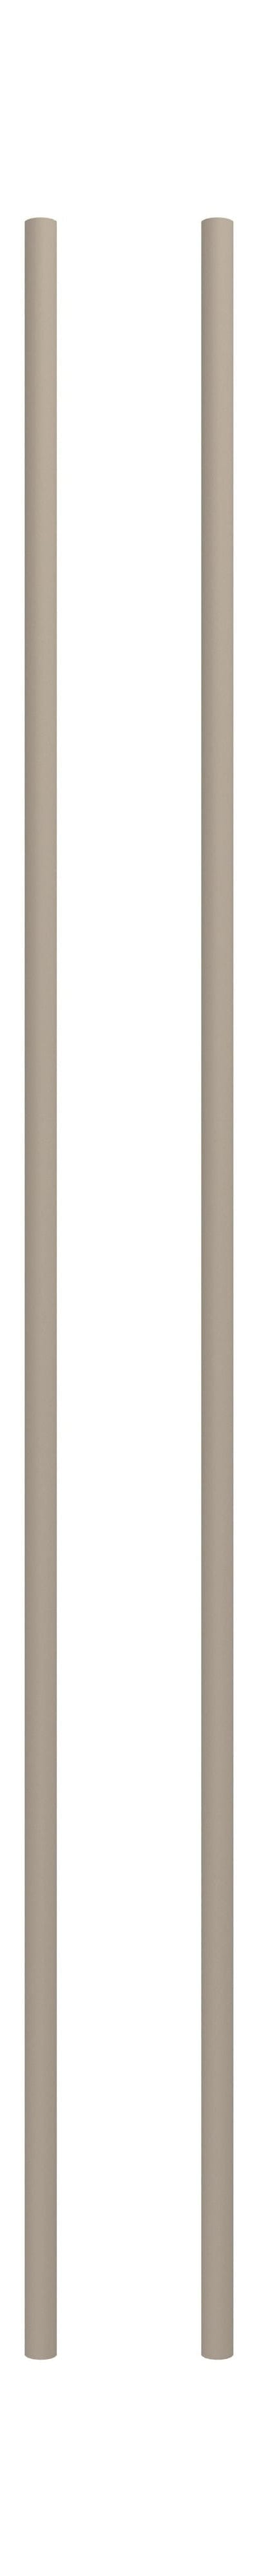 Moebe Spling -systeem/muurrekken been 115 cm warm grijs, set van 2